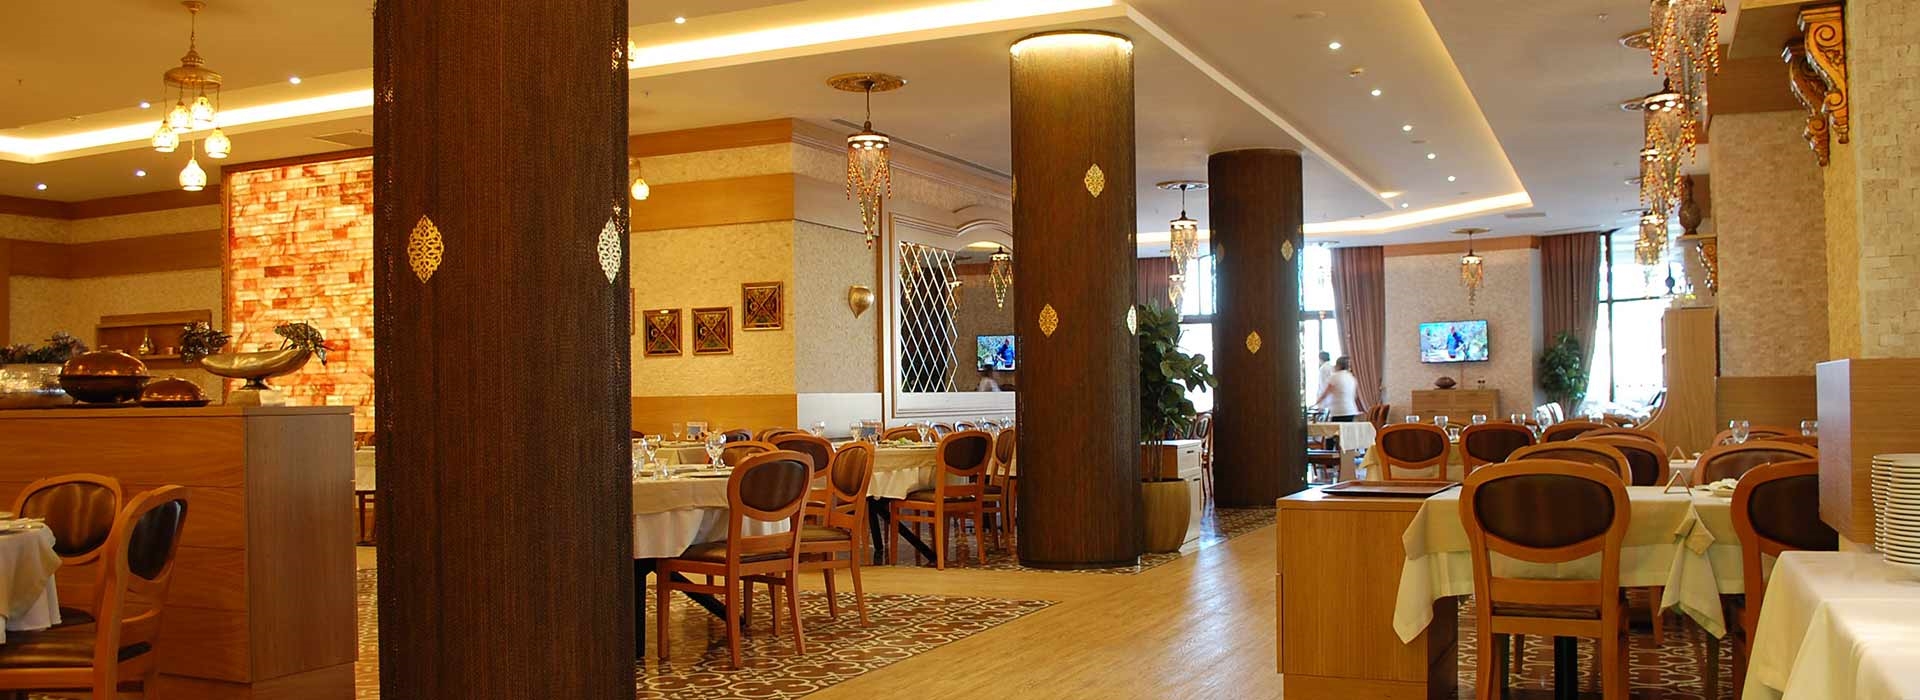 Sahan Restaurant 